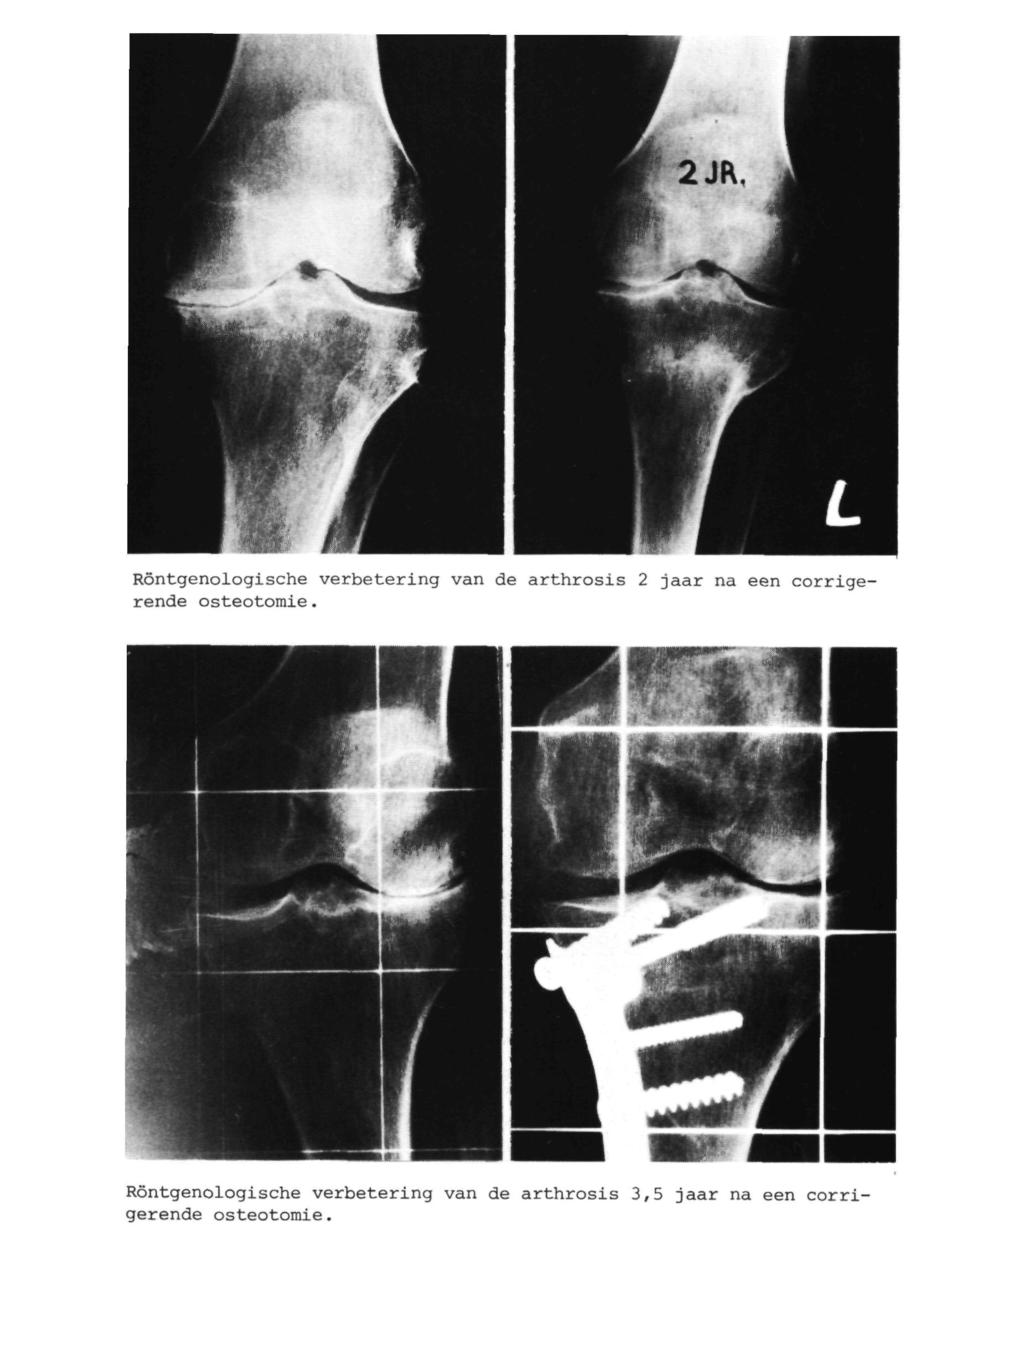 Röntgenologische verbetering van de arthrosis 2 jaar na een corrigerende Osteotomie.